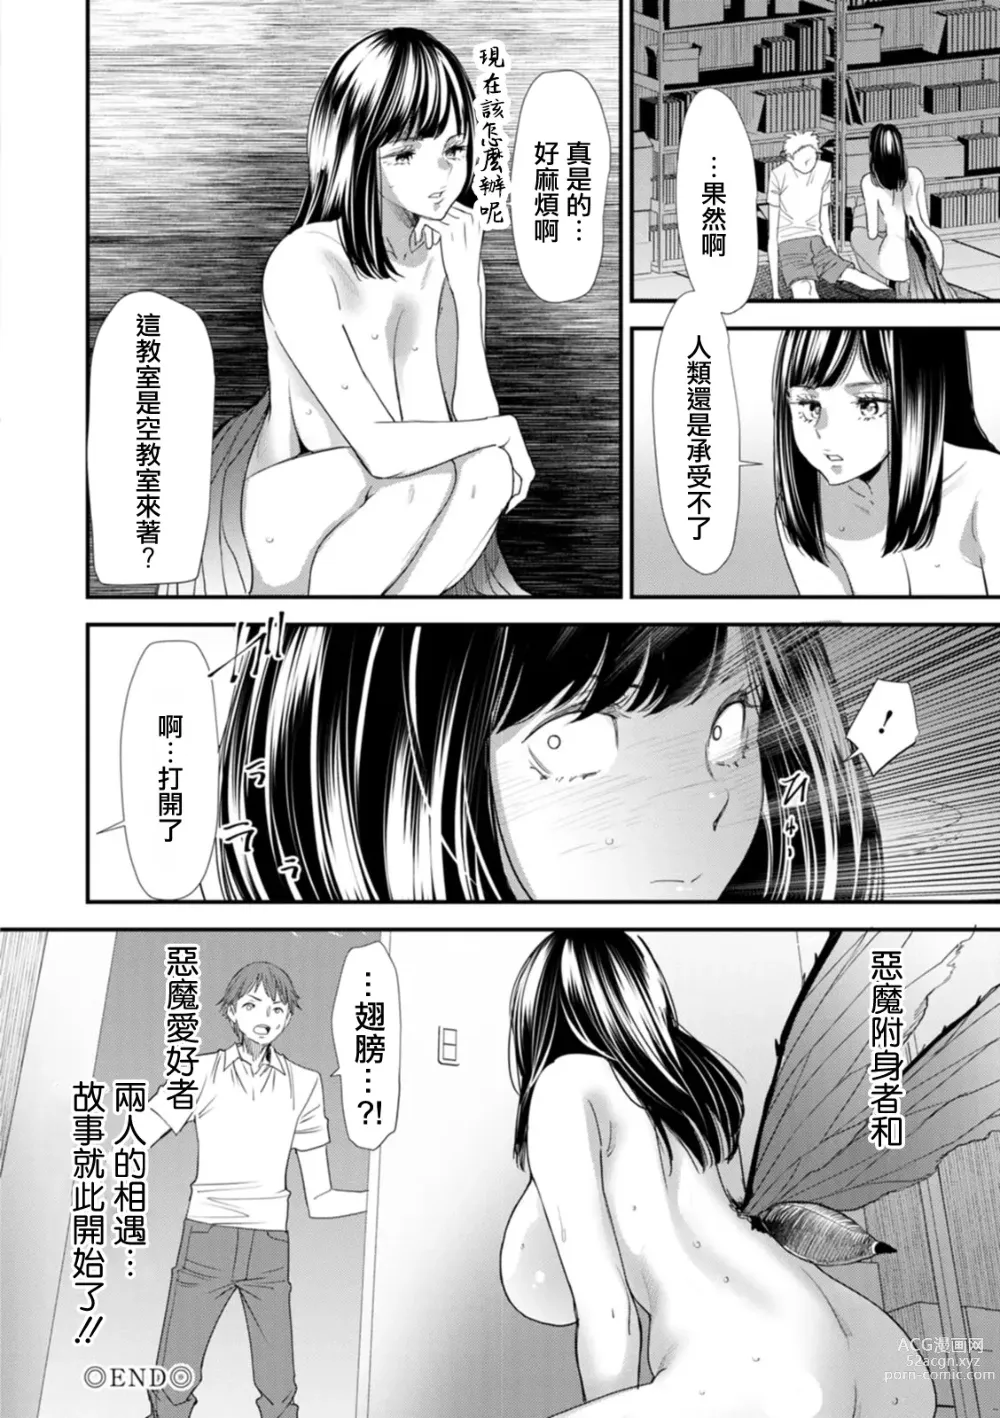 Page 20 of manga Inma Joshi Daisei no Yuuutsu Ch. 1 Uwasa no Joshidaisei Takemi  Yuki